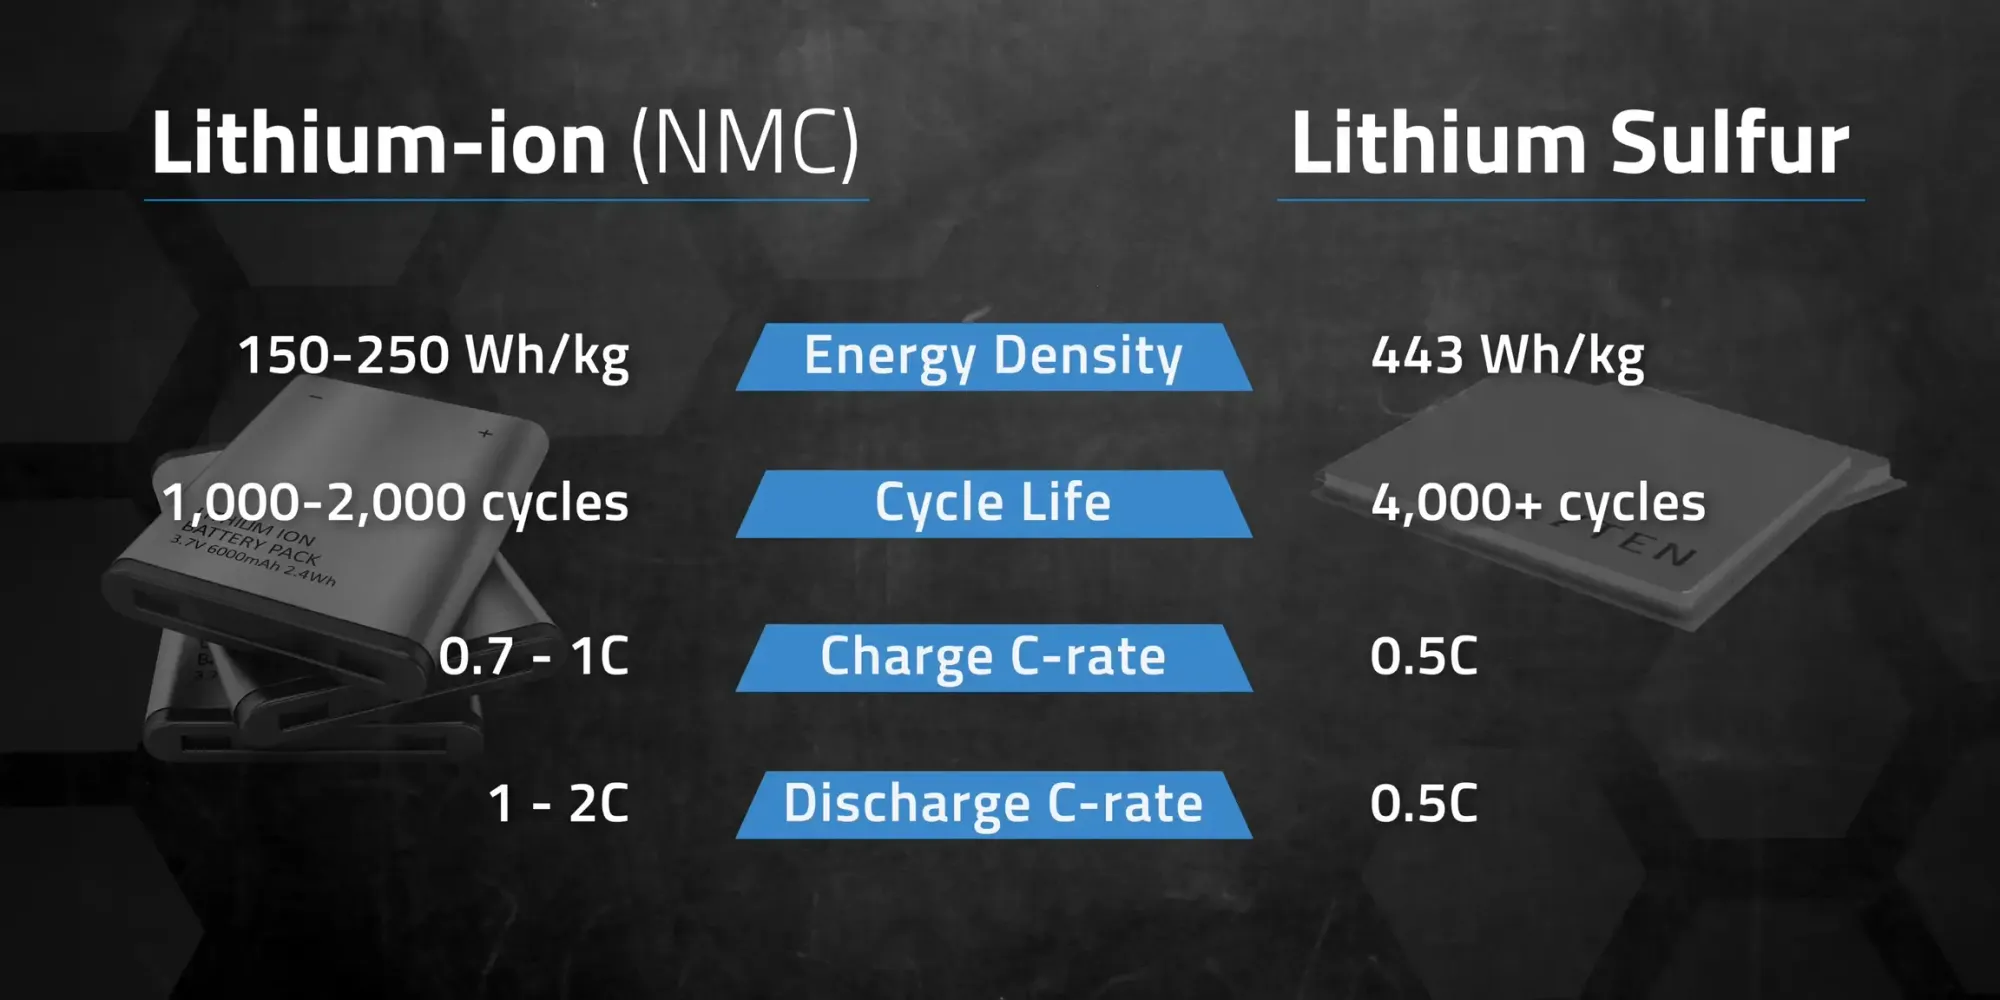 Lithium sulphur batteries